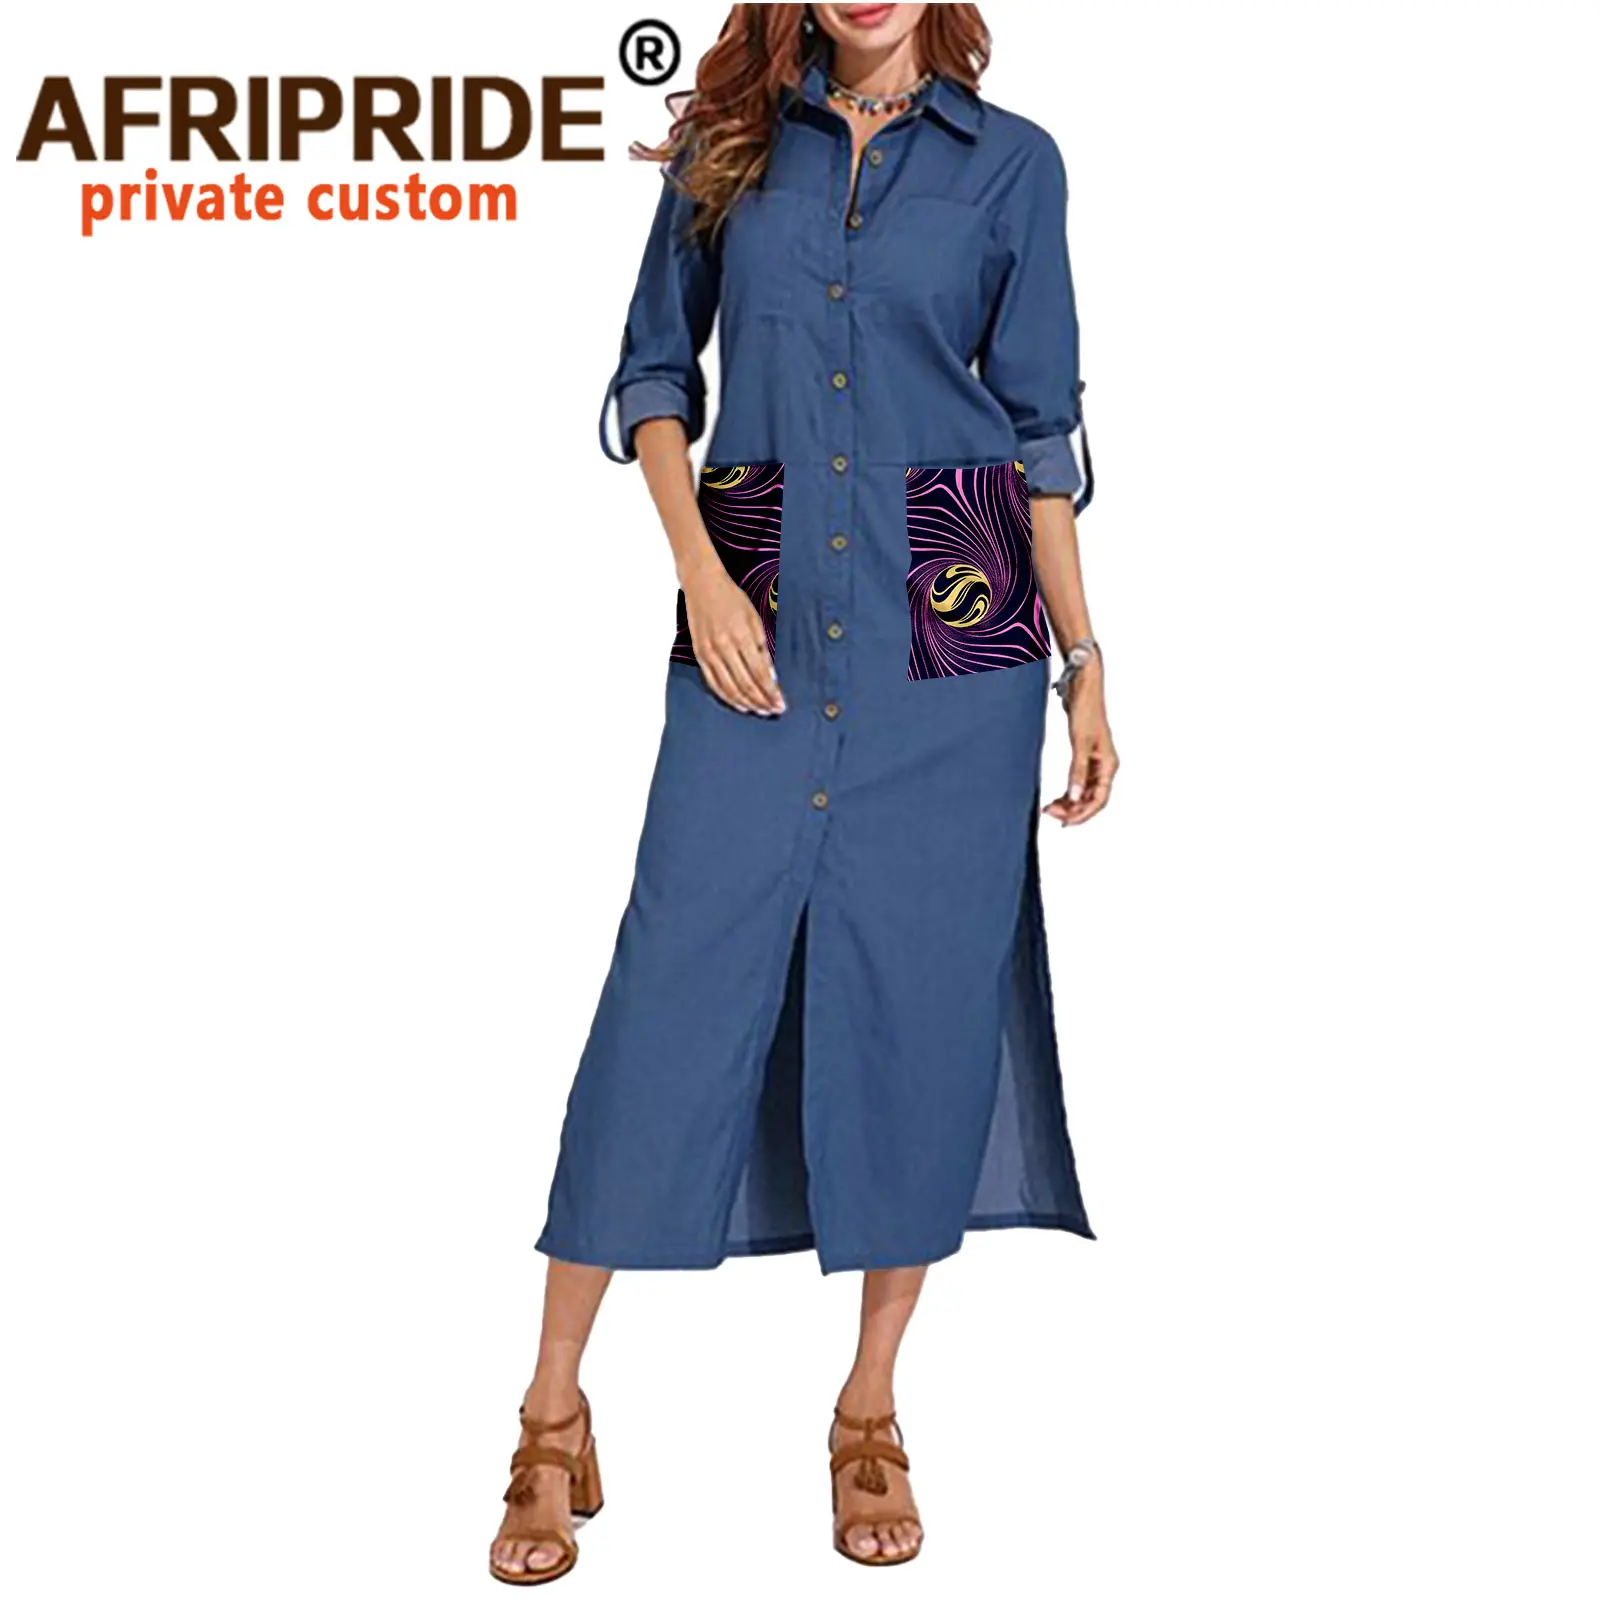 African Dresses for Girls A-Line Mid-Calf Length Women Ankara Print Denim Dress with Pockets A2025033